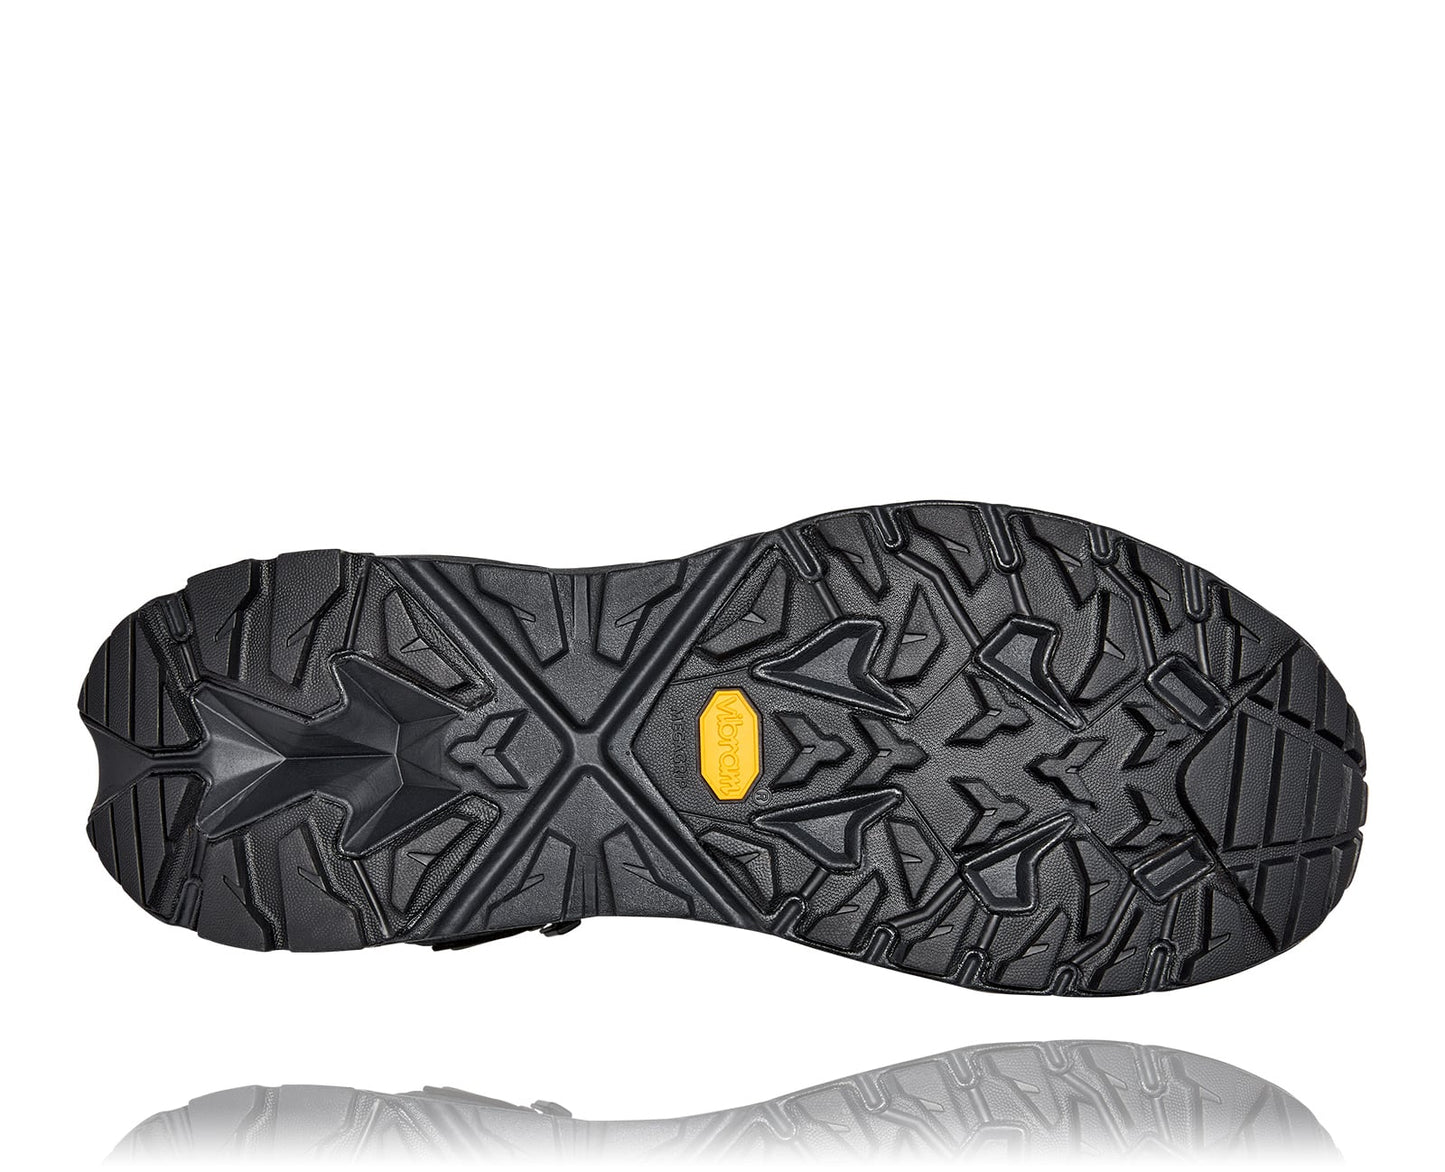 Anacapa M GTX mid, svart vattentät sko perfekt för vandring i alla underlag och väder. Hos Hoka specialisterna i Sverige.